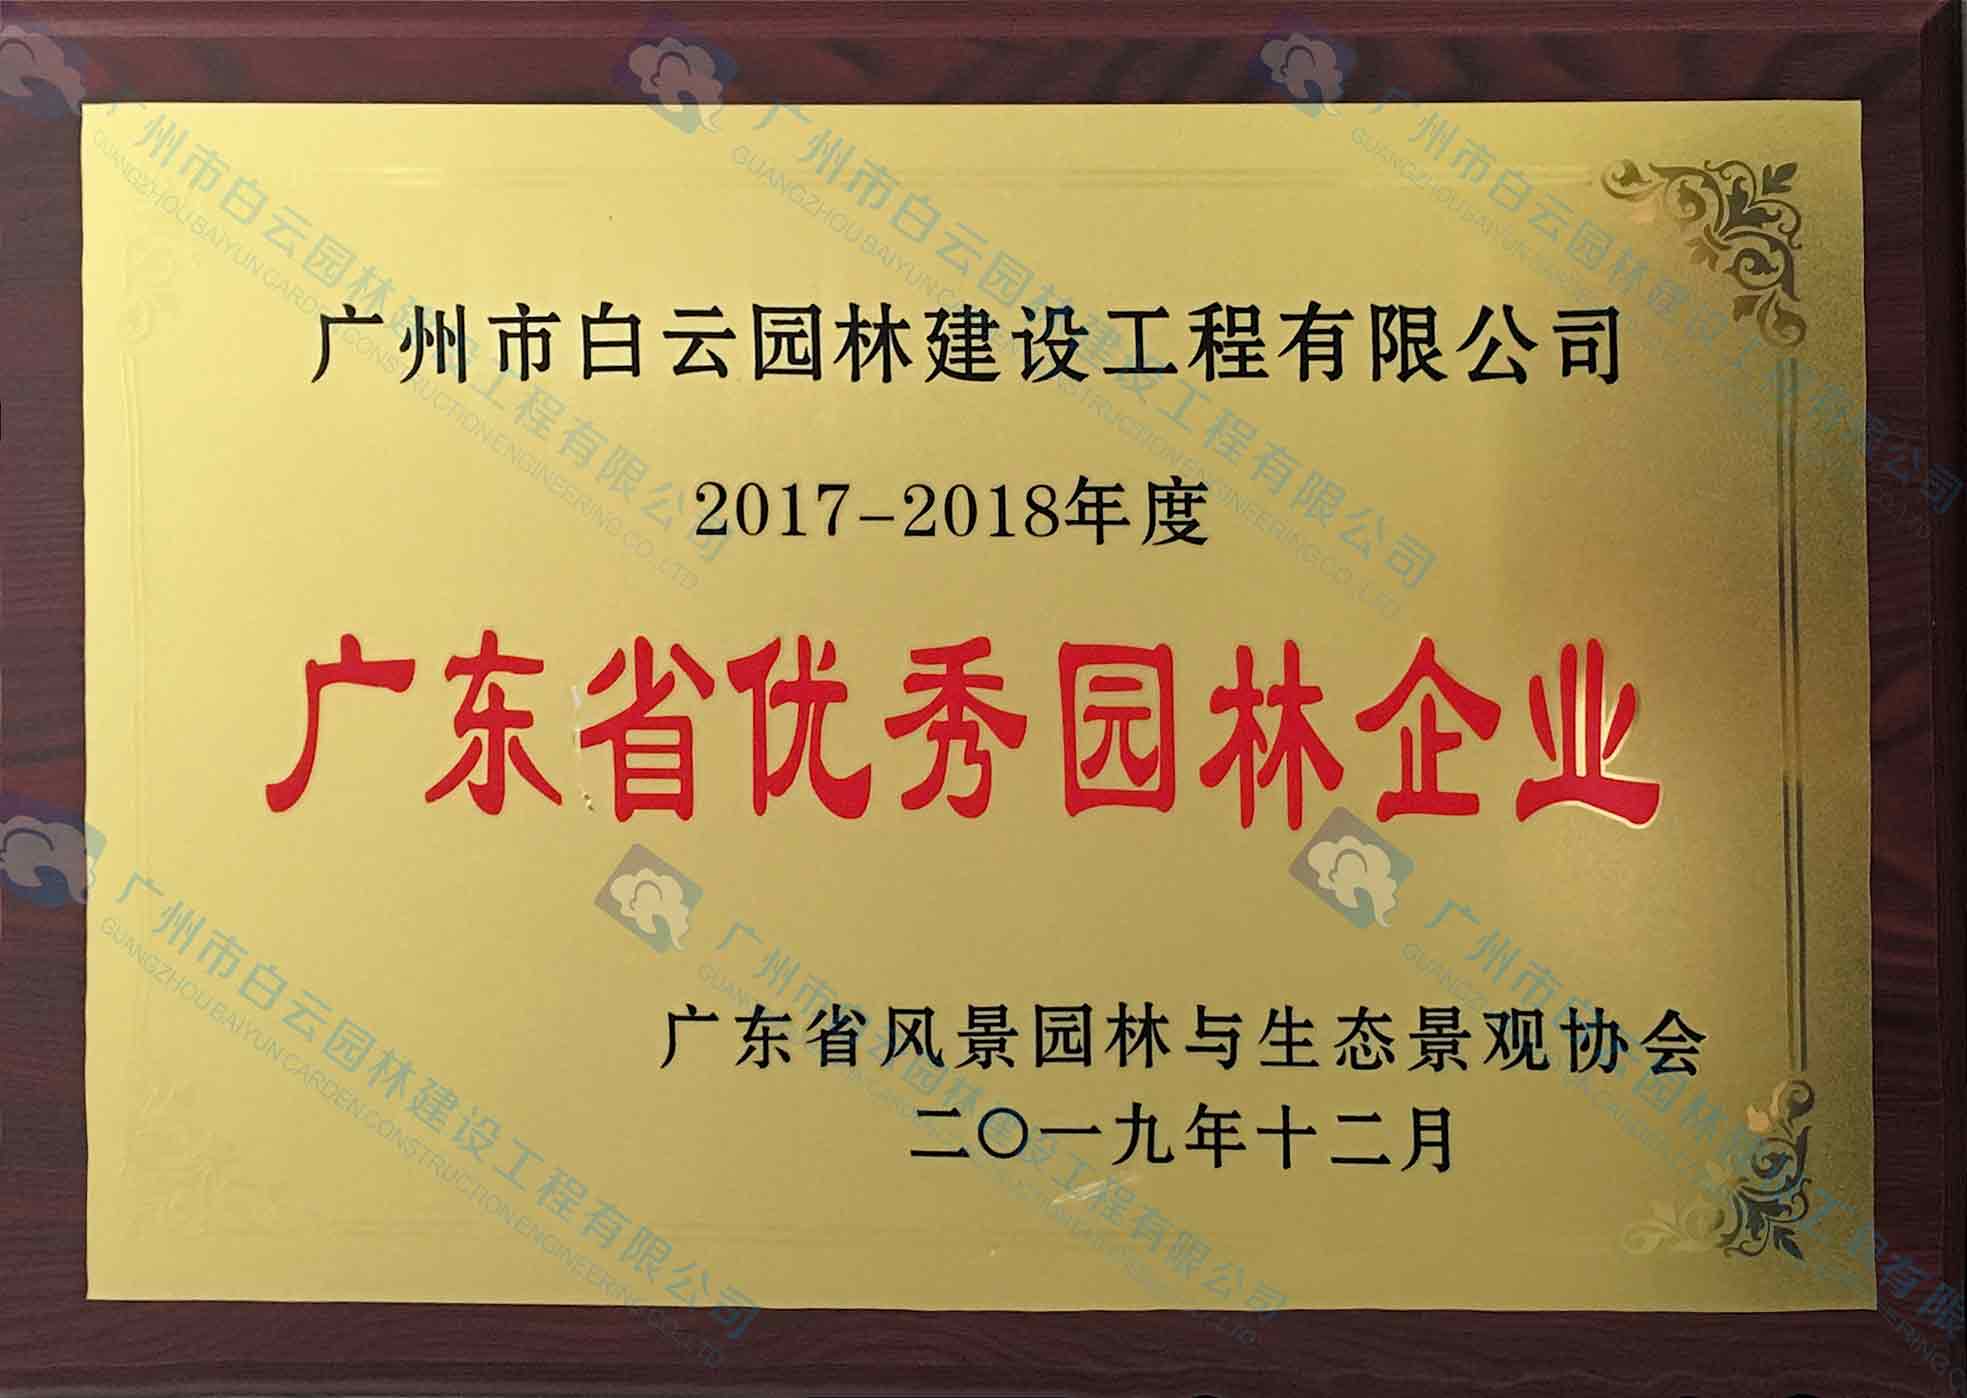 2017-2018年度 广东省优秀园林企业